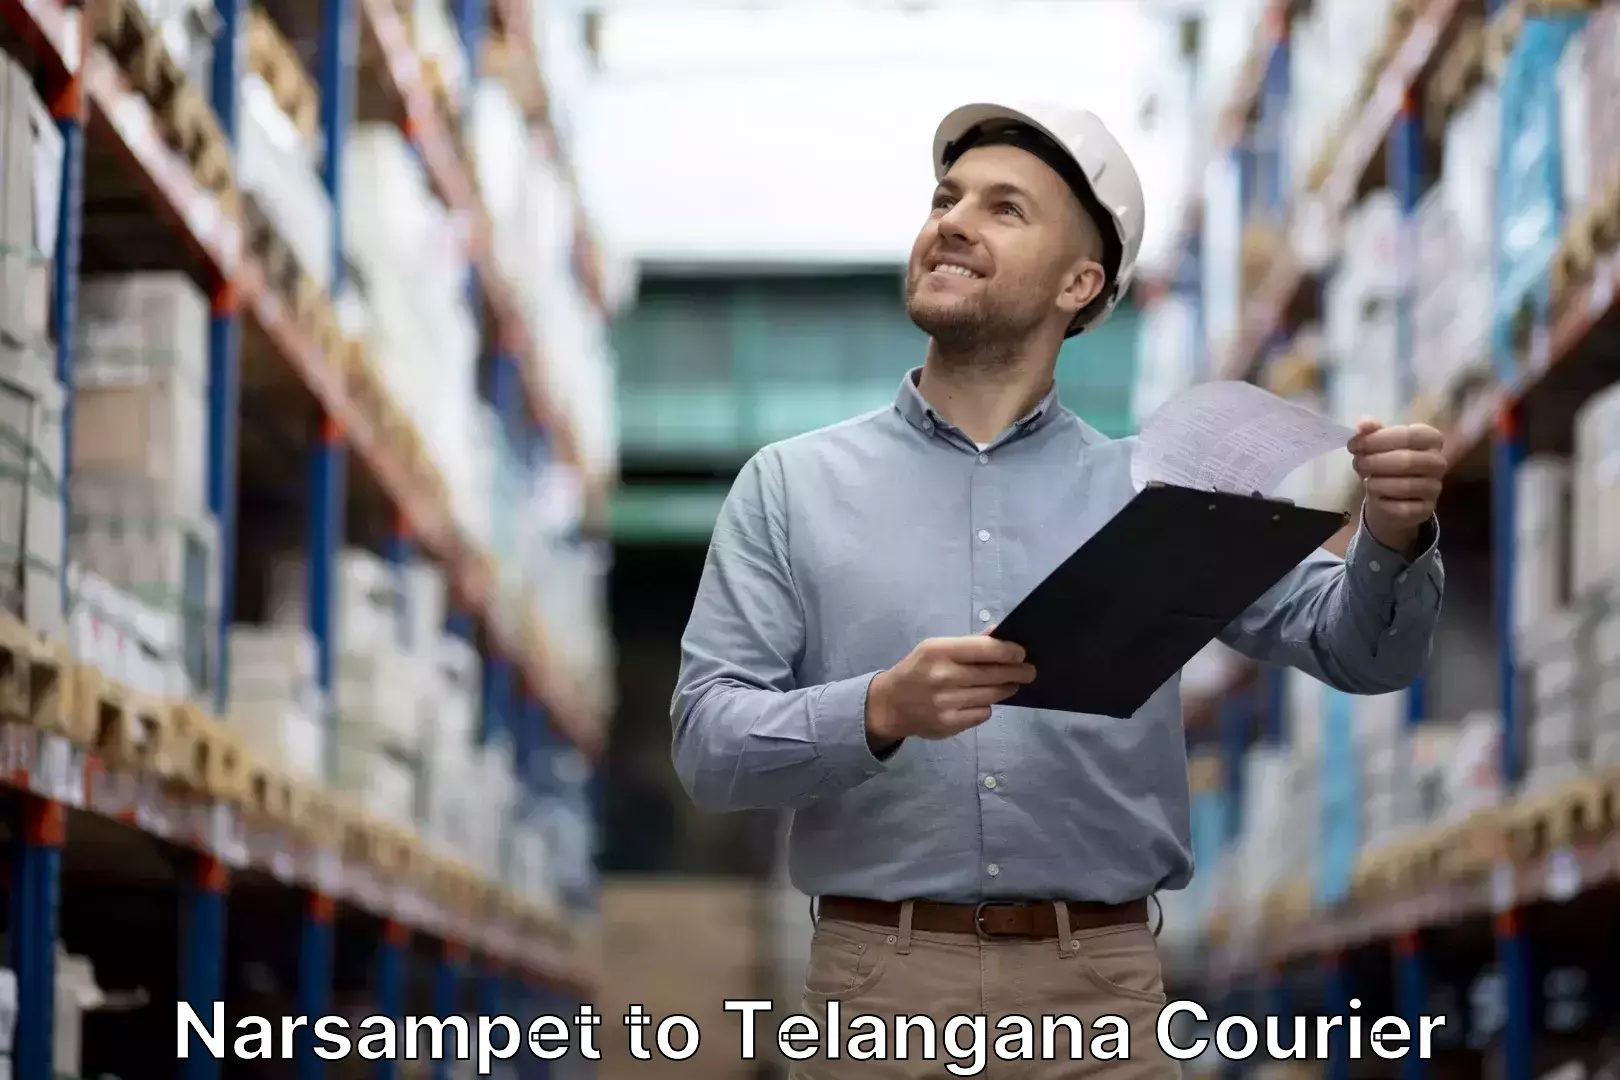 Baggage transport services Narsampet to Telangana